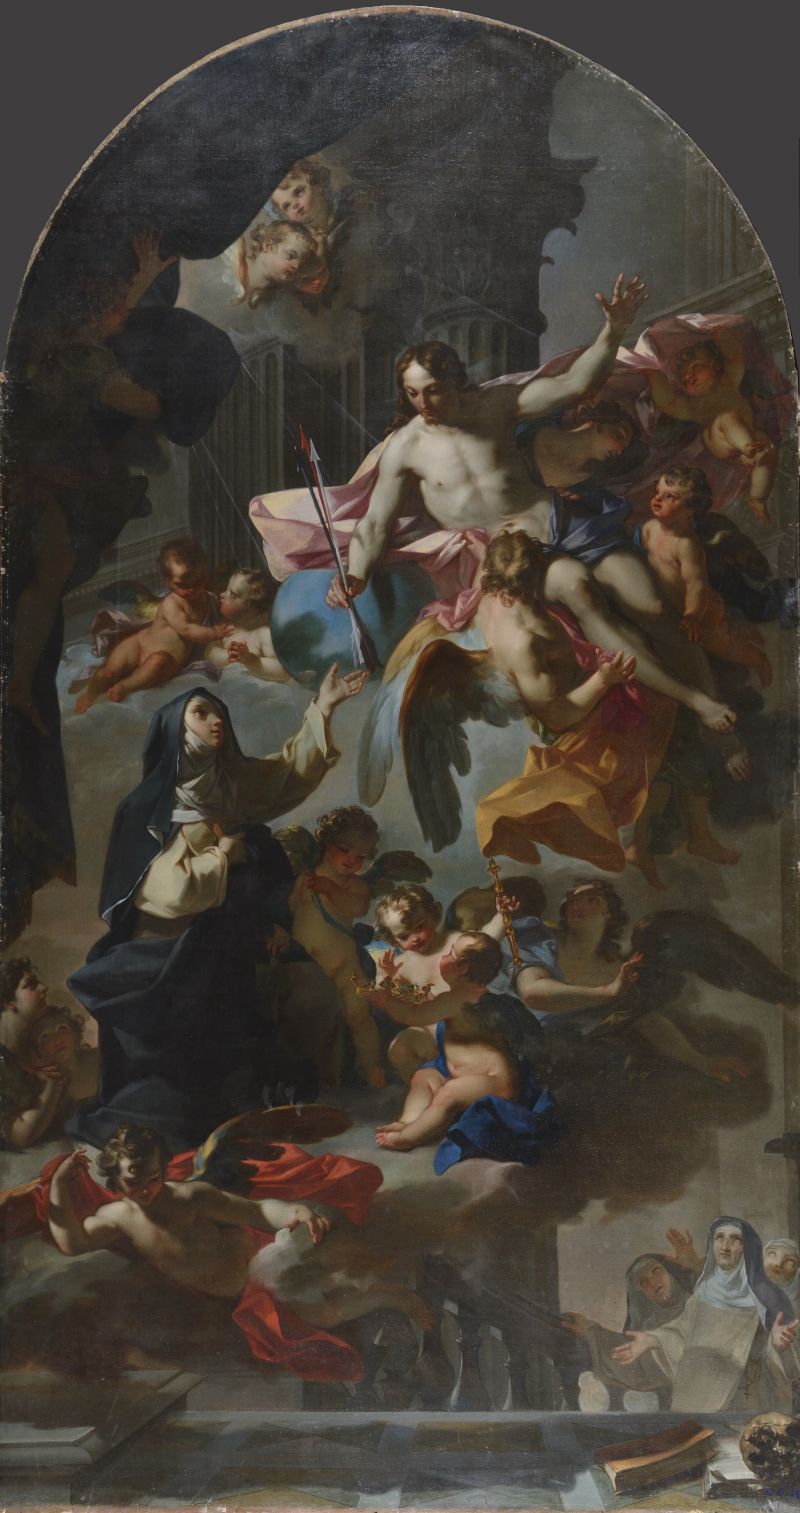 C.F. Beaumont, La visione mistica della beata Margherita di Savoia